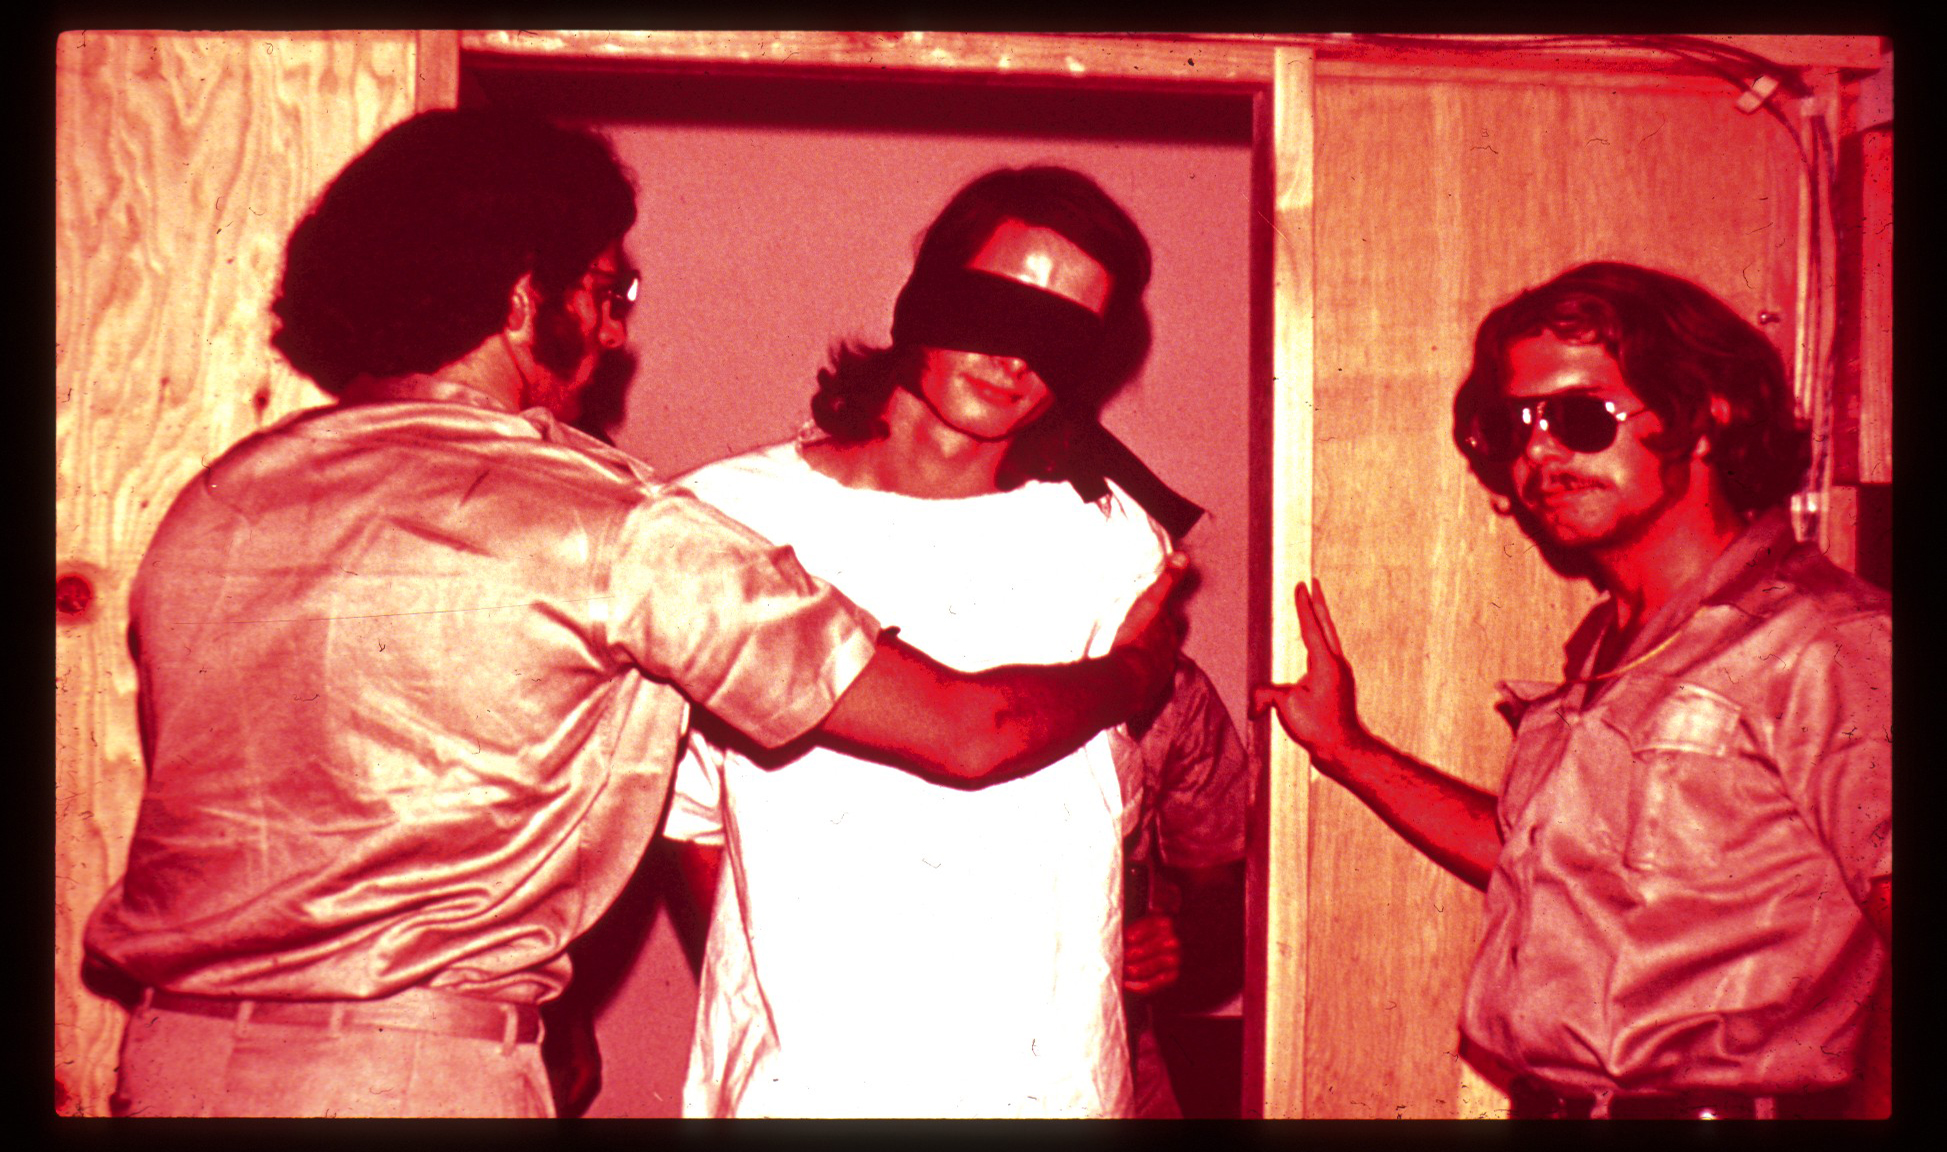 Guards with Blindfolded Prisoner